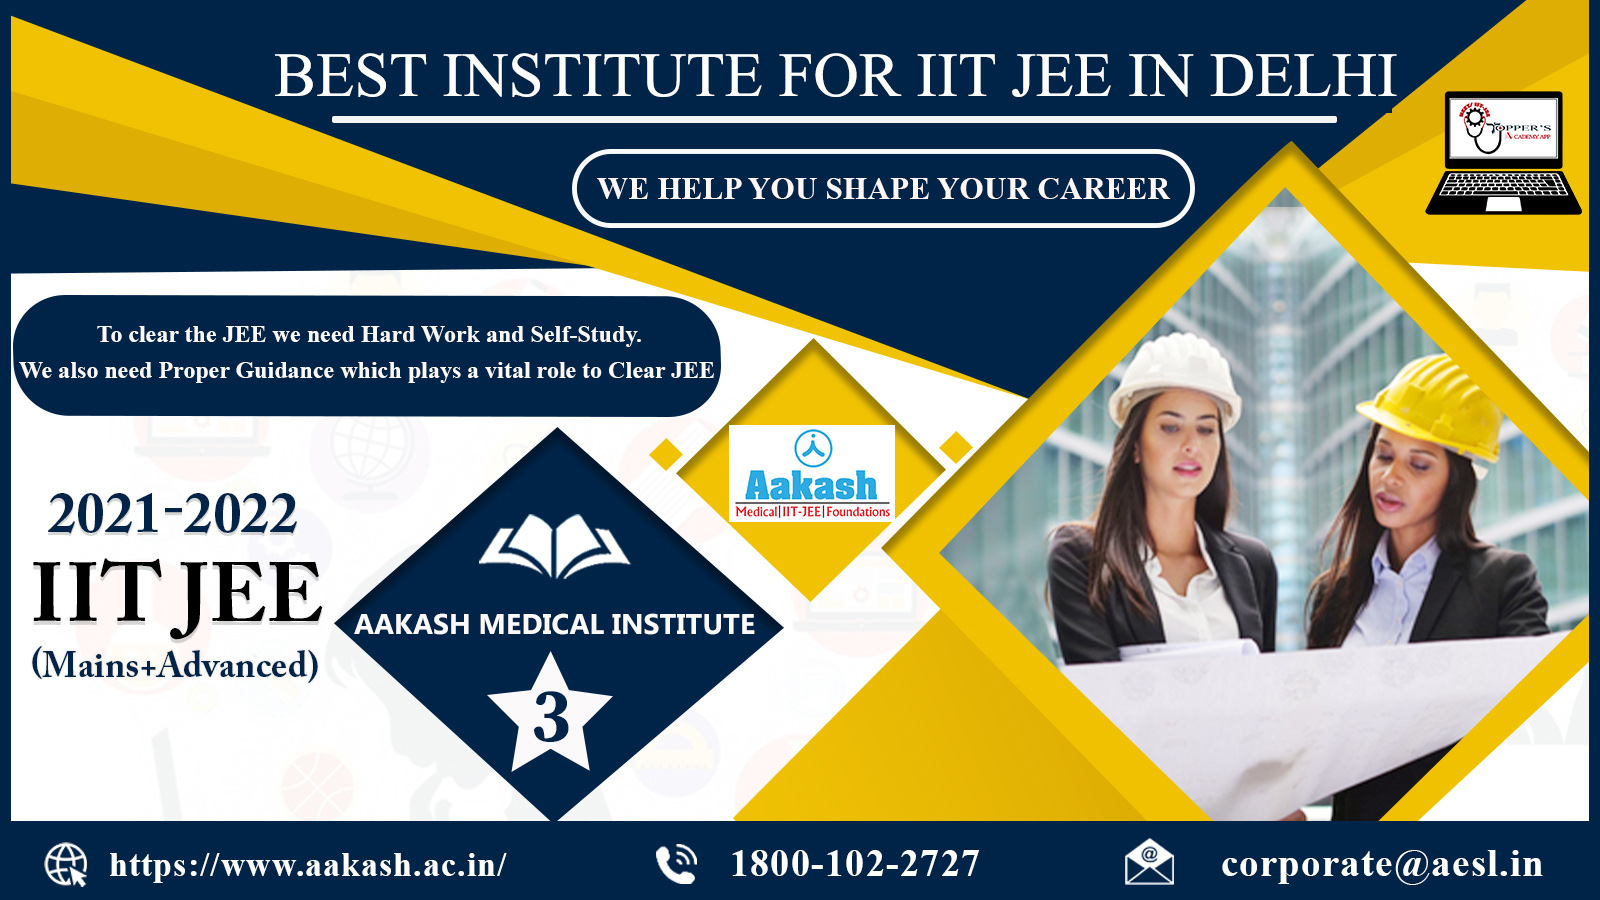 Aakash Institute In Delhi For IIT JEE 